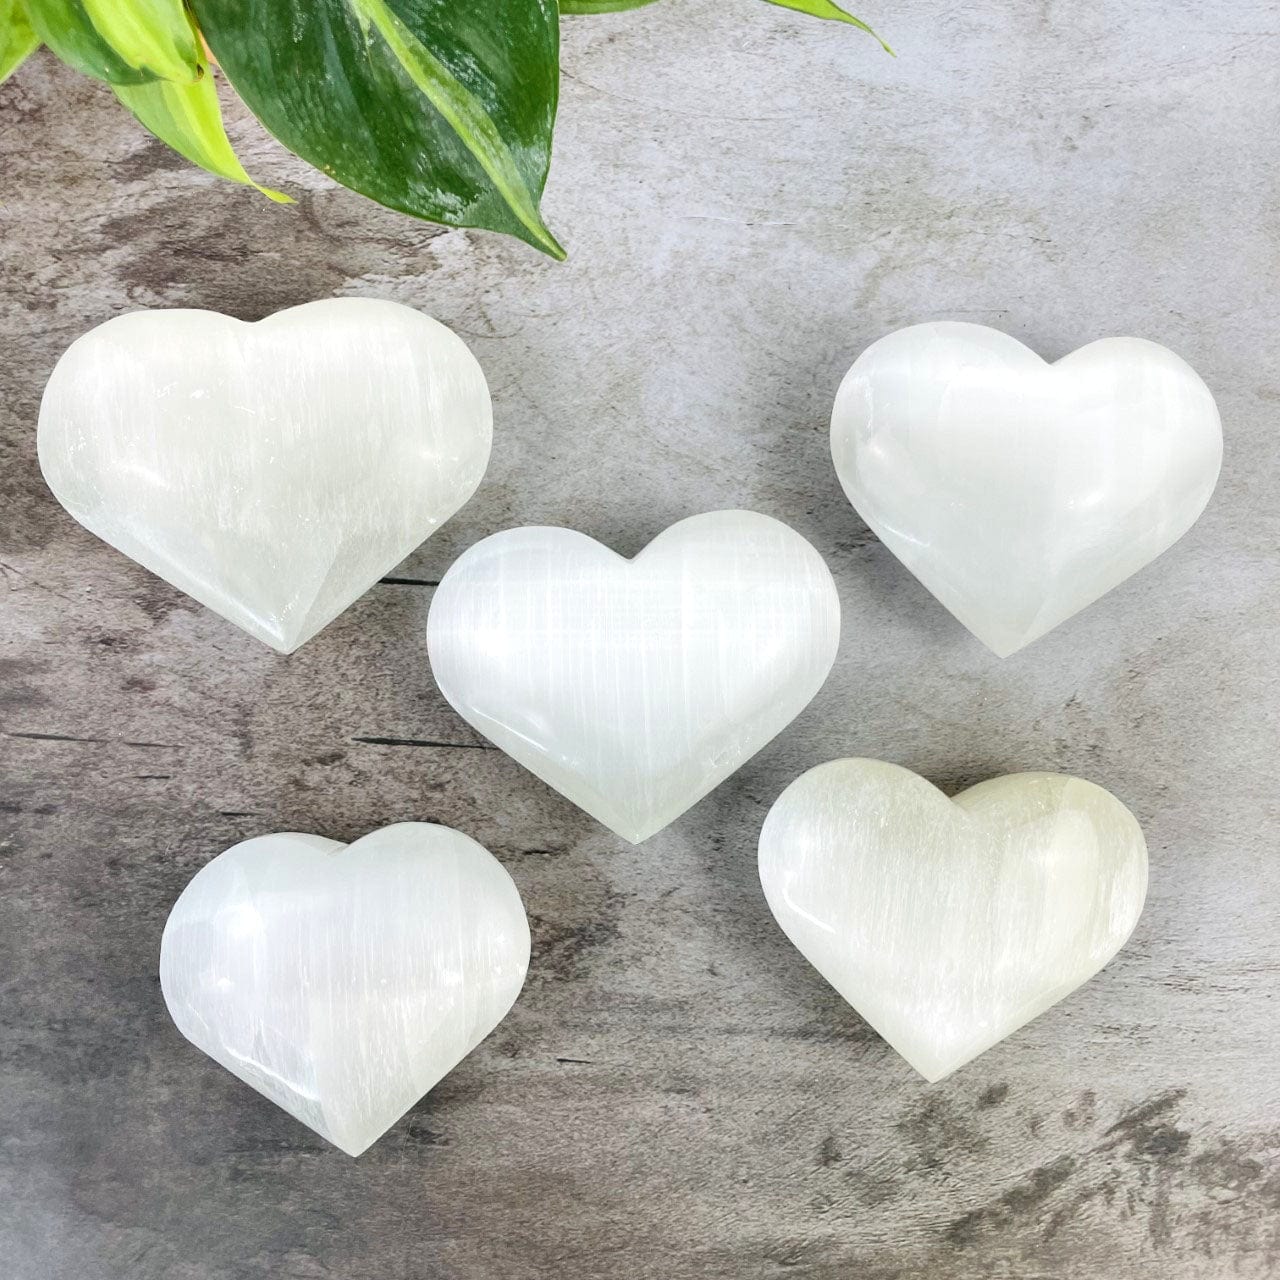 5  Selenite Heart Shaped Stones